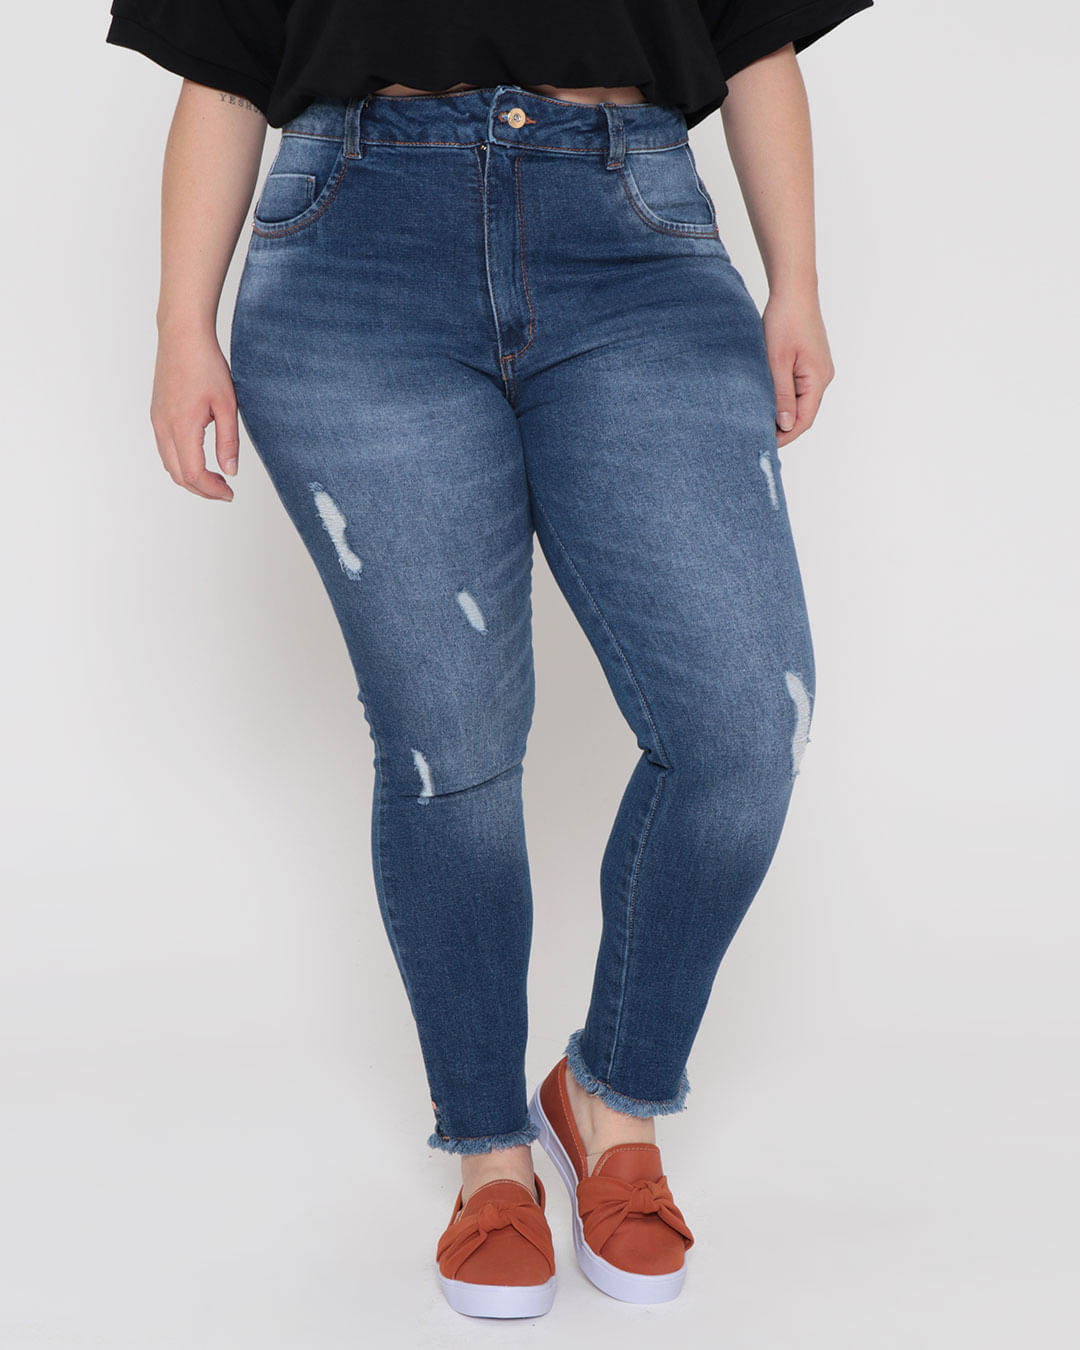 Calca-Jeans-Plus-Size-Feminina-Puidos-Cigarrete-Biotipo-Azul-